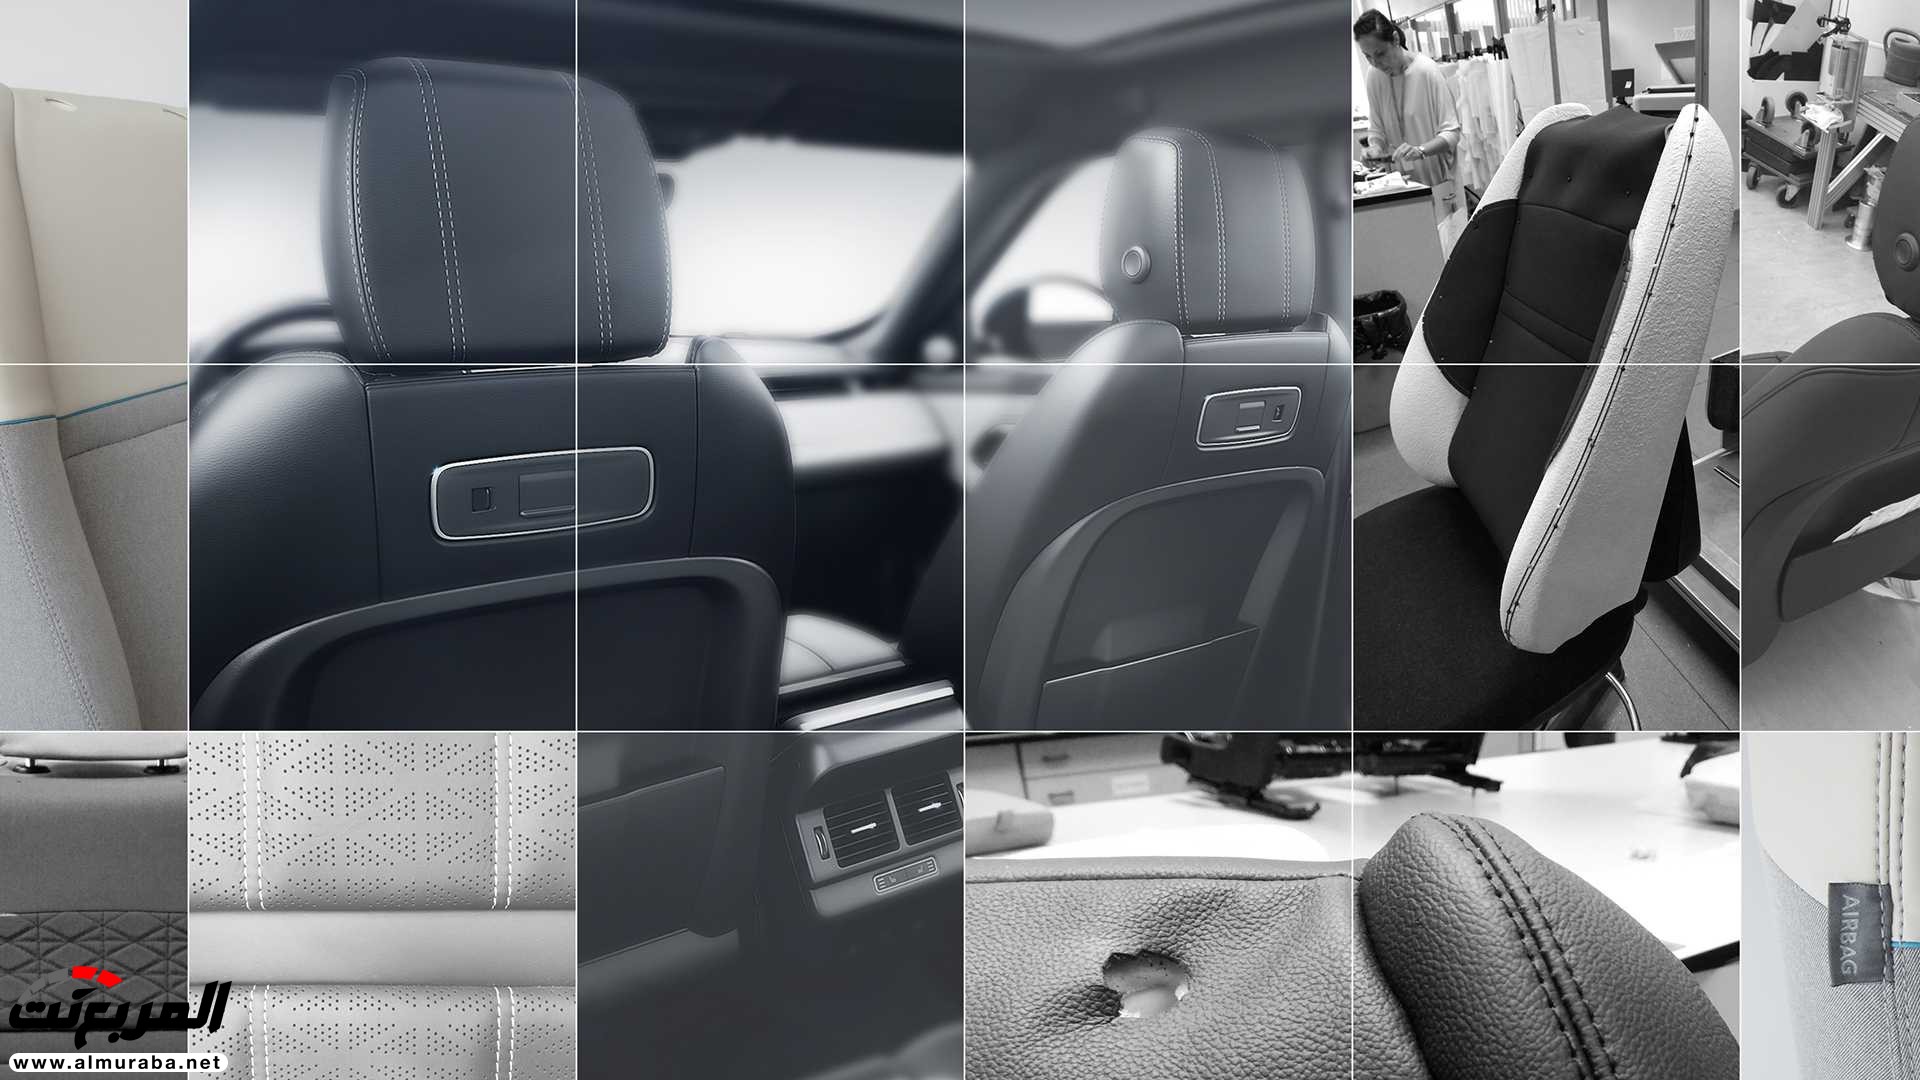 اهم 7 معلومات عن رنج روفر ايفوك 2020 الجديدة كلياً Range Rover Evoque 100